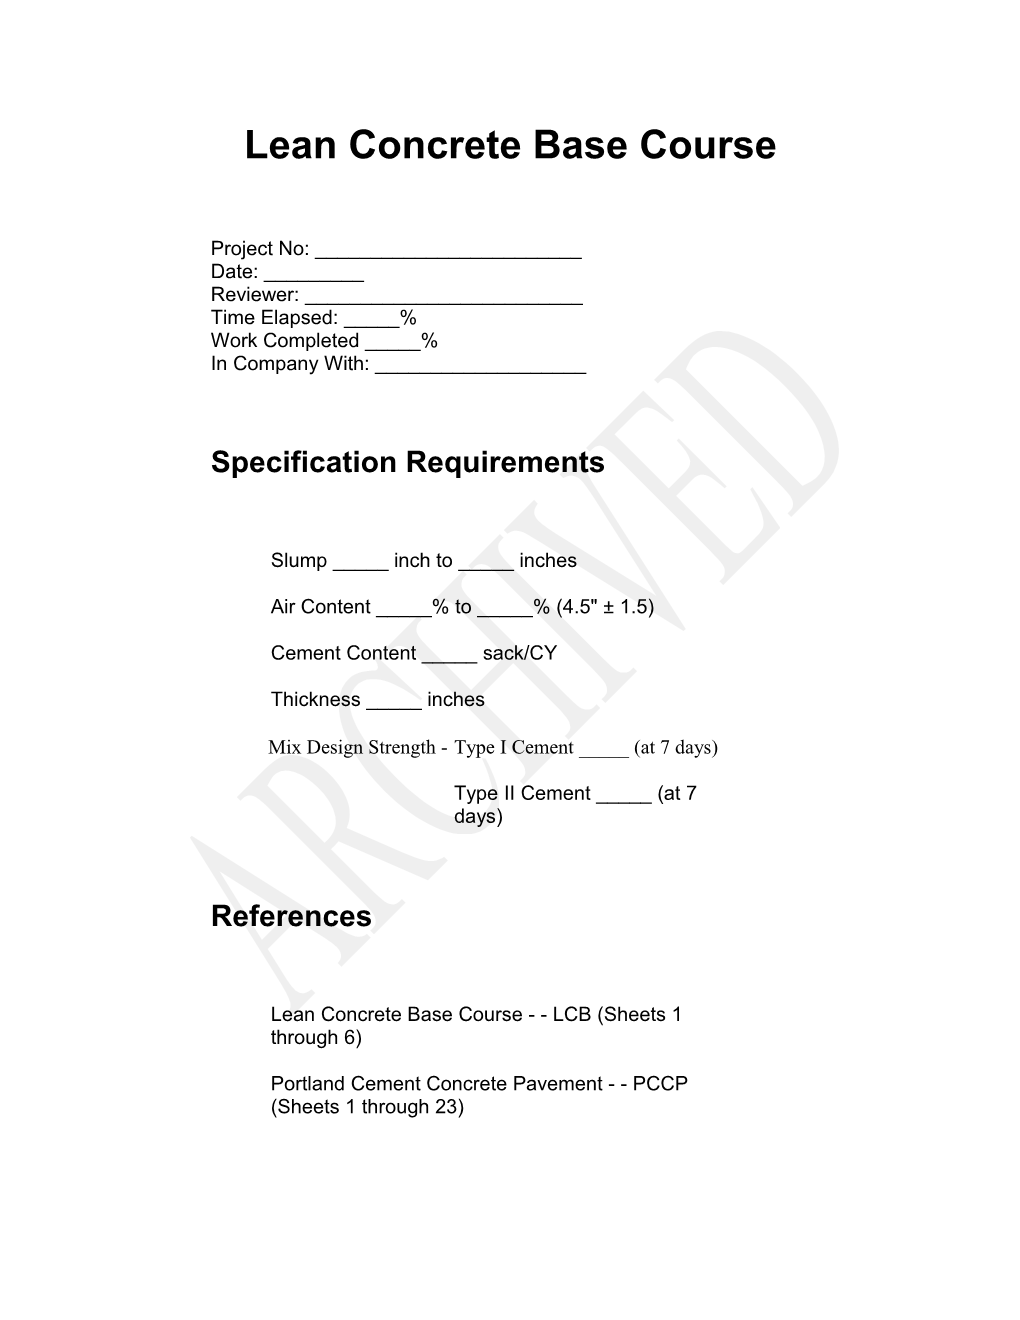 Lean Concrete Base Course